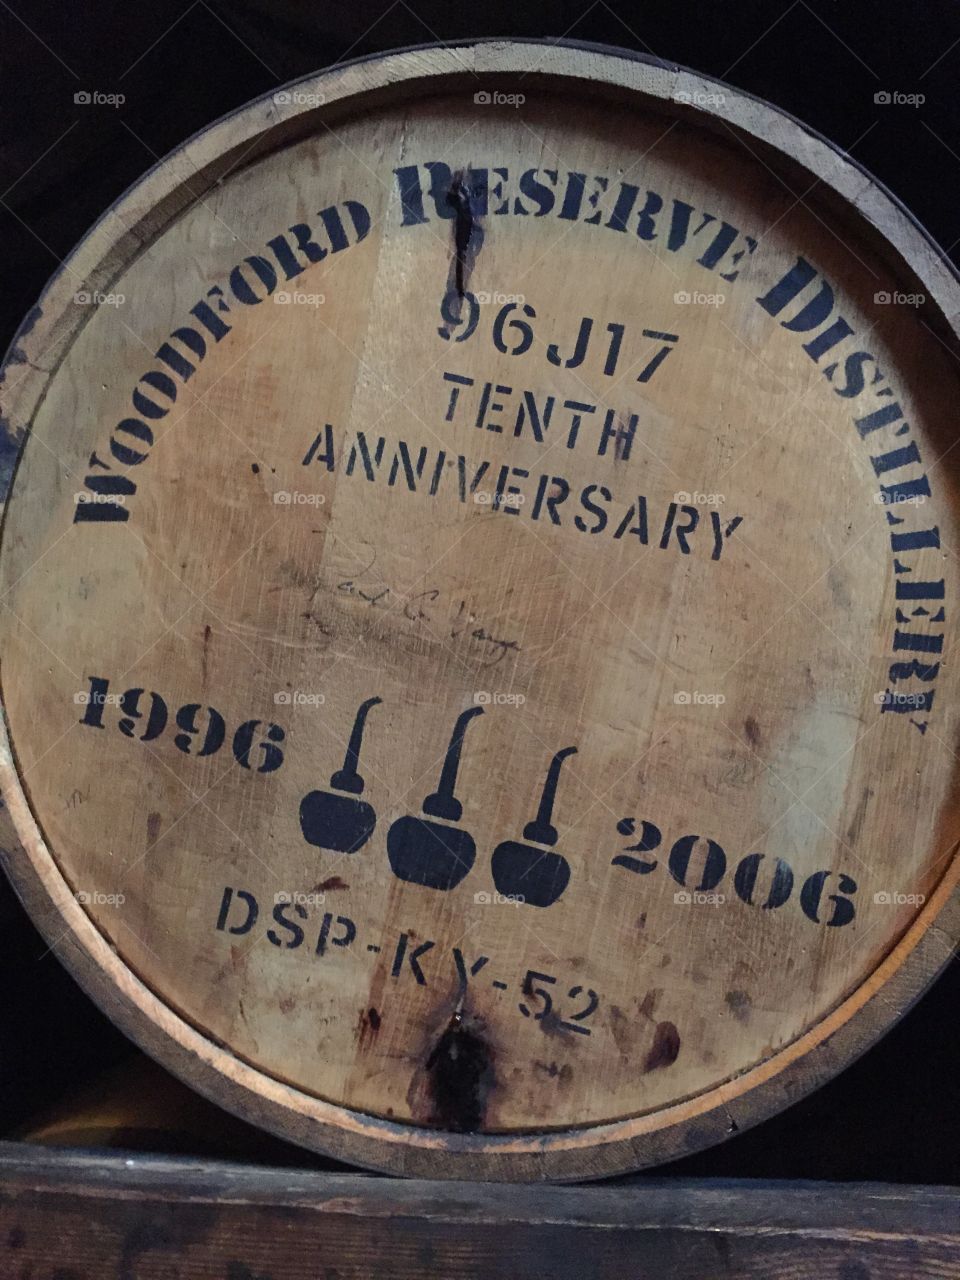 Woodford Reserve Bourbon Barrel 